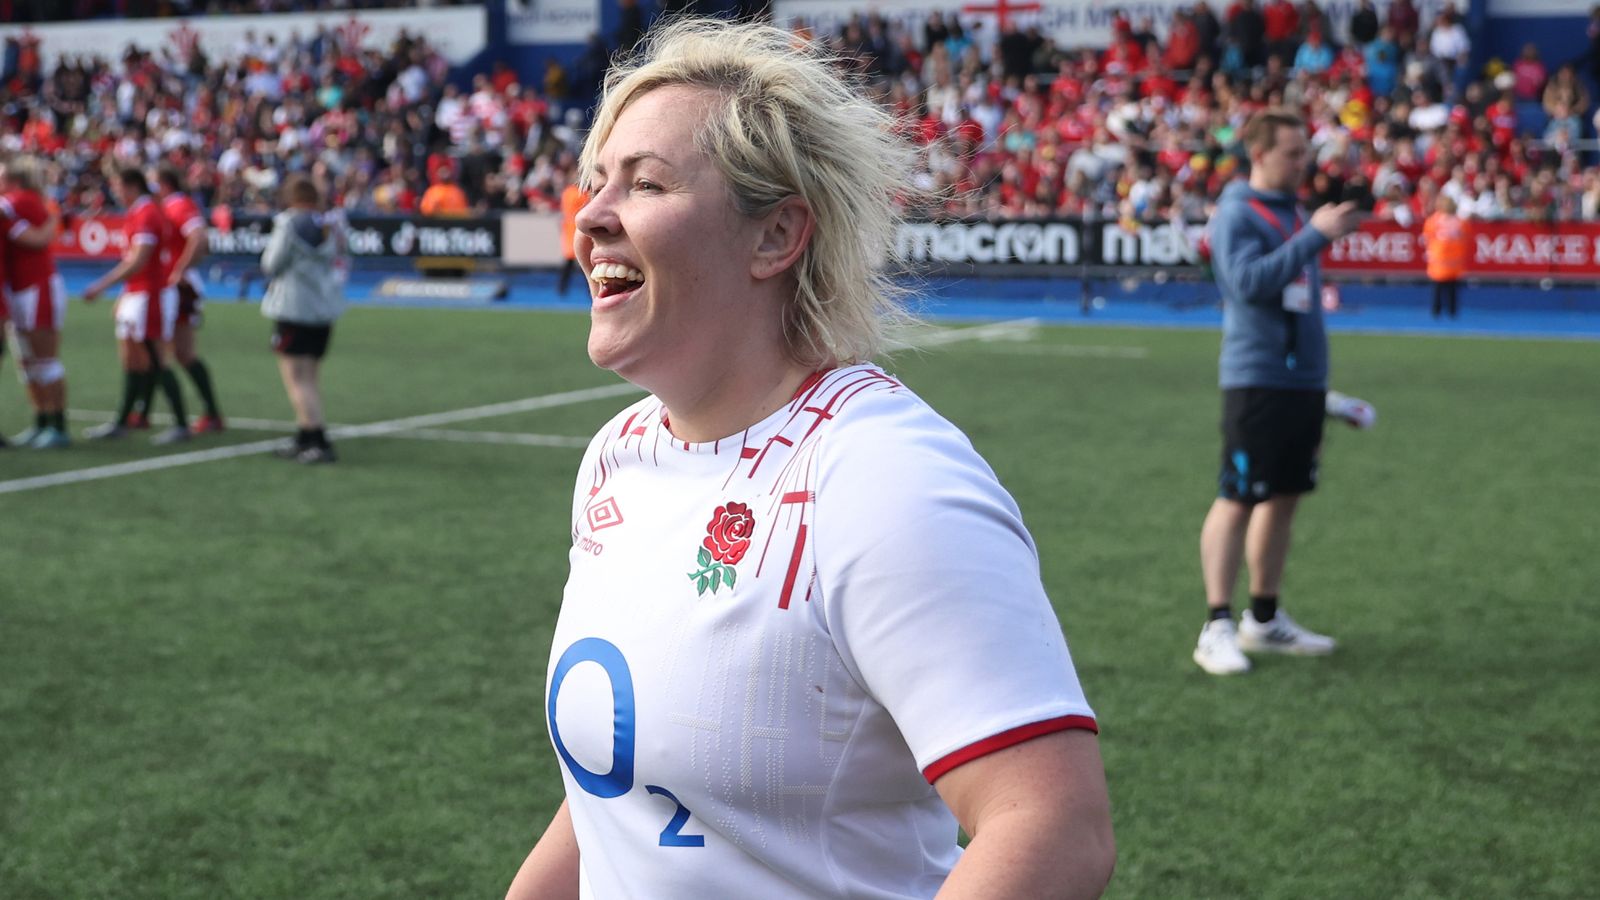 Seis Naciones Femeninas 2023: Marlie Packer y Hannah Botterman en el equipo de Inglaterra para enfrentar a Francia en el decisivo |  Noticias de la Unión de Rugby